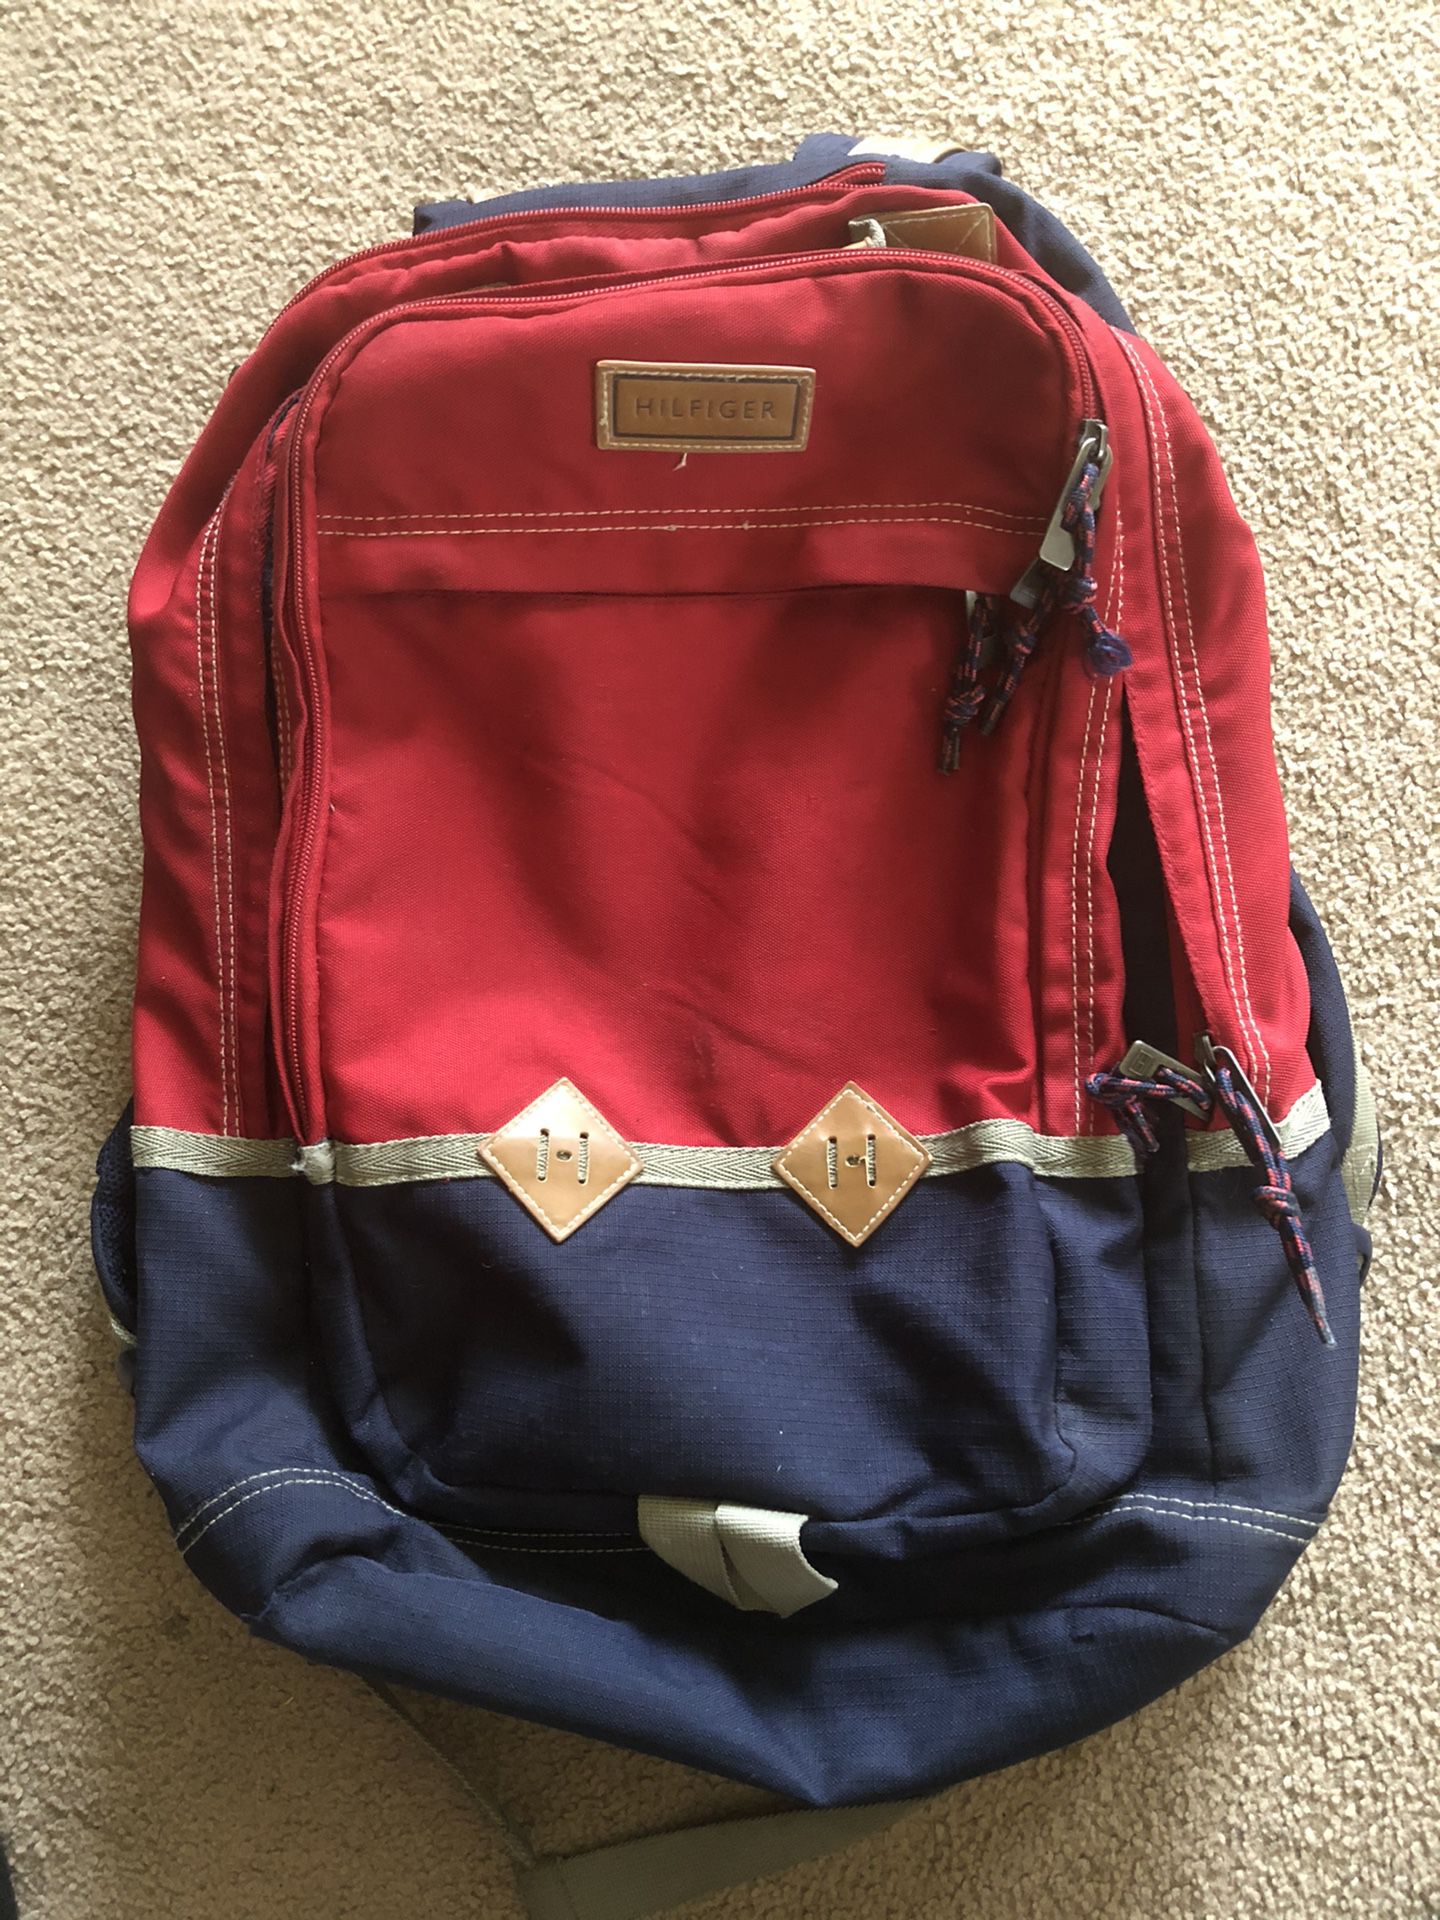 Tommy Hilfiger backpack